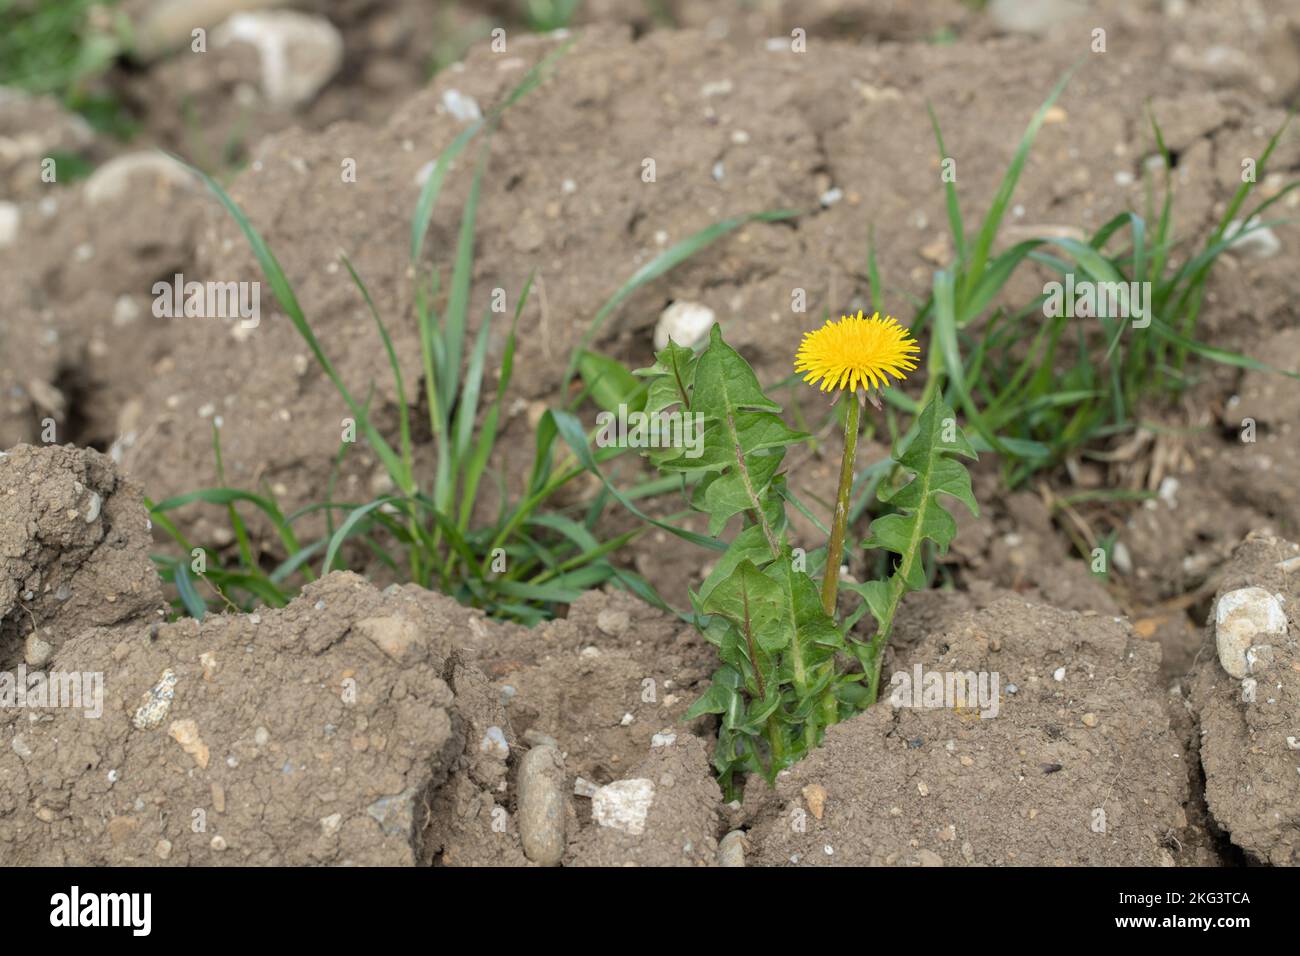 Dandelion (Genus taraxacum) grows on soil in a plowed field. Stock Photo